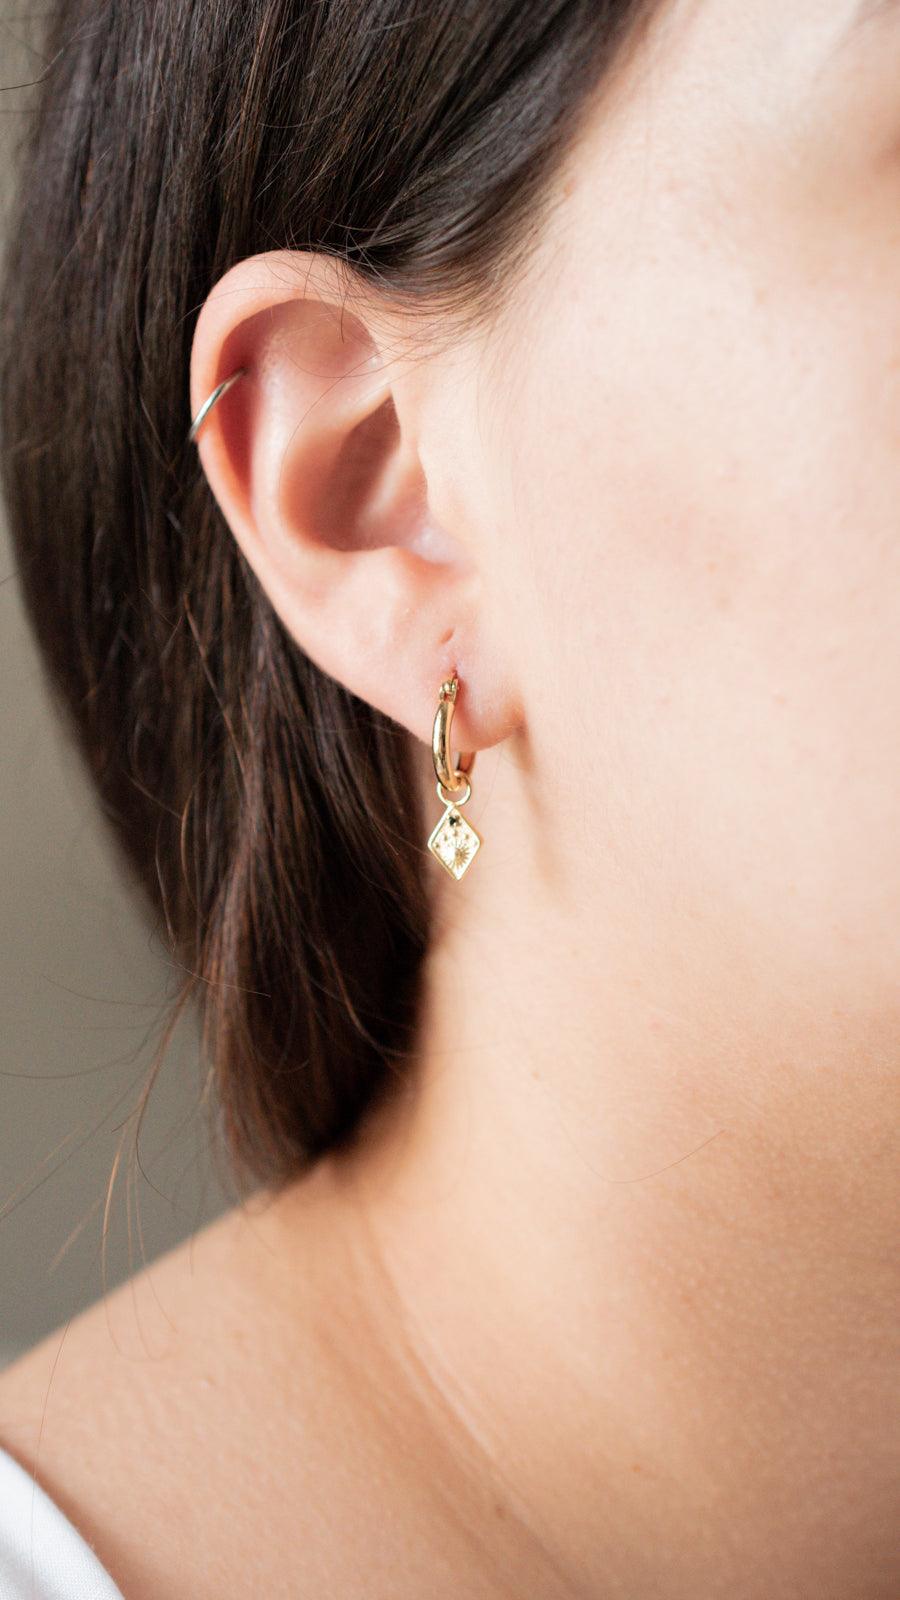 sun hoop earrings on a model